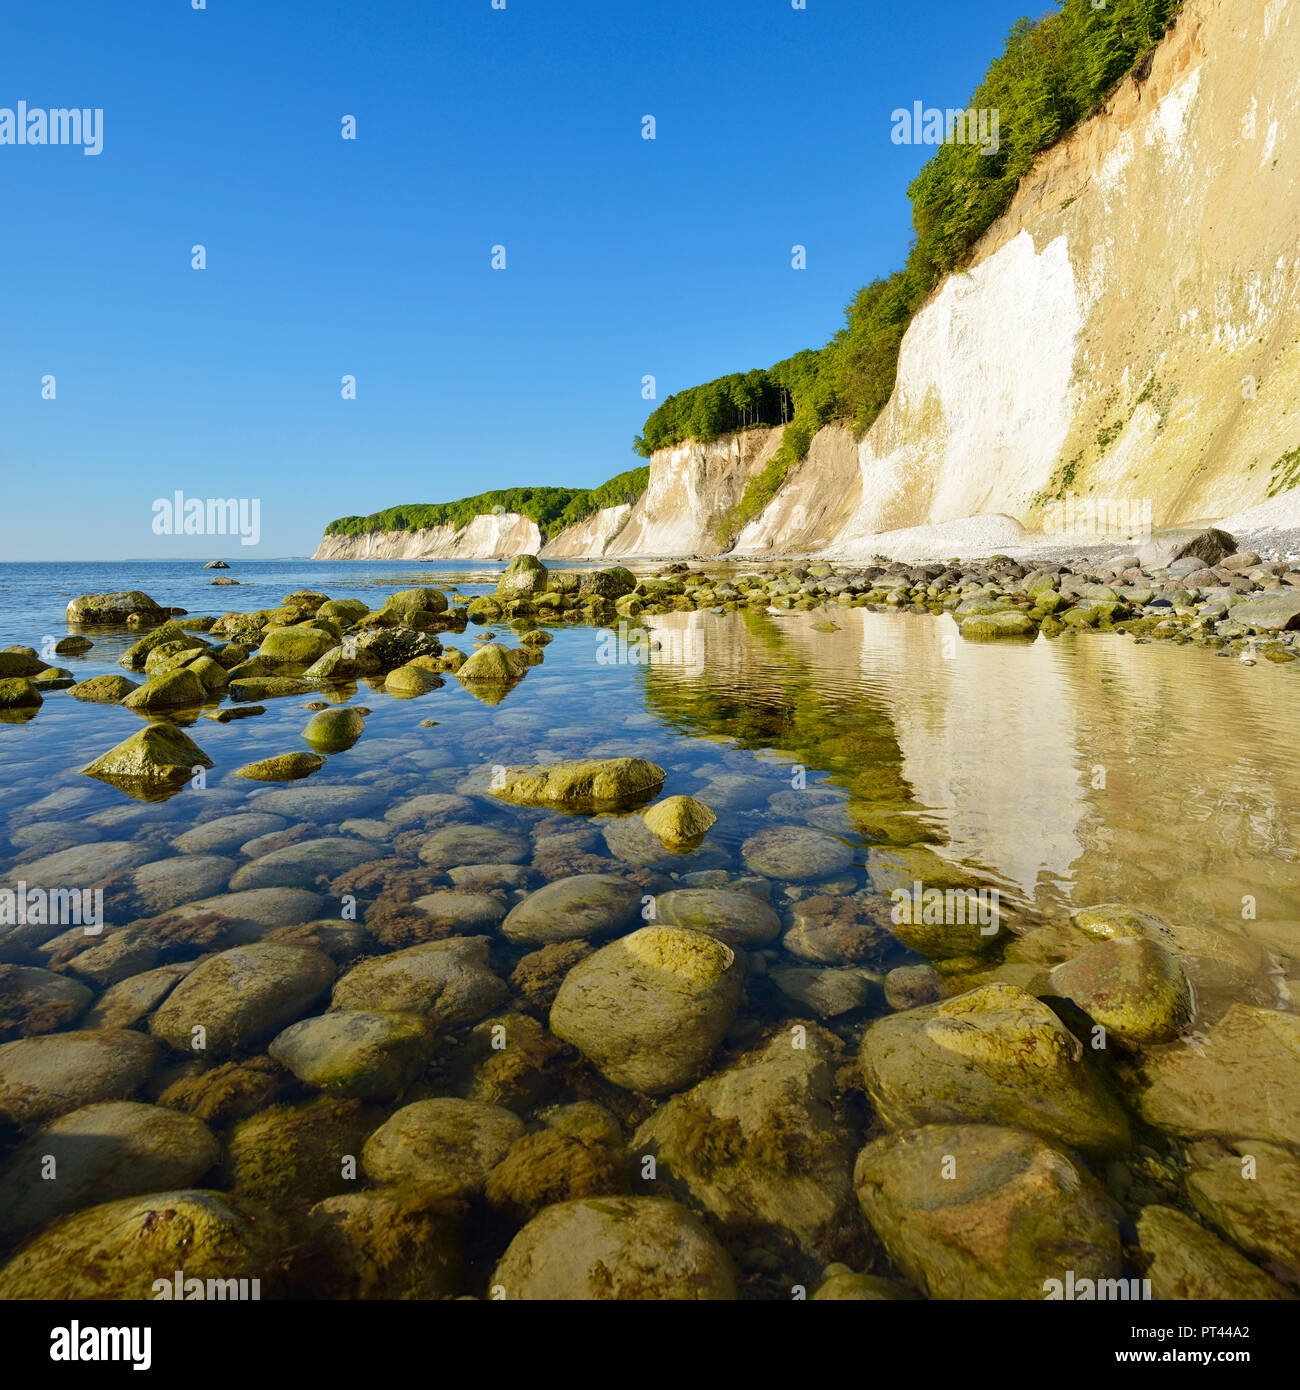 Germania, Meclemburgo-Pomerania, Rügen Isola, Jasmund National Park, spiaggia rocciosa di fronte al chalk cliffs, riflesso nelle acque del mar Baltico Foto Stock